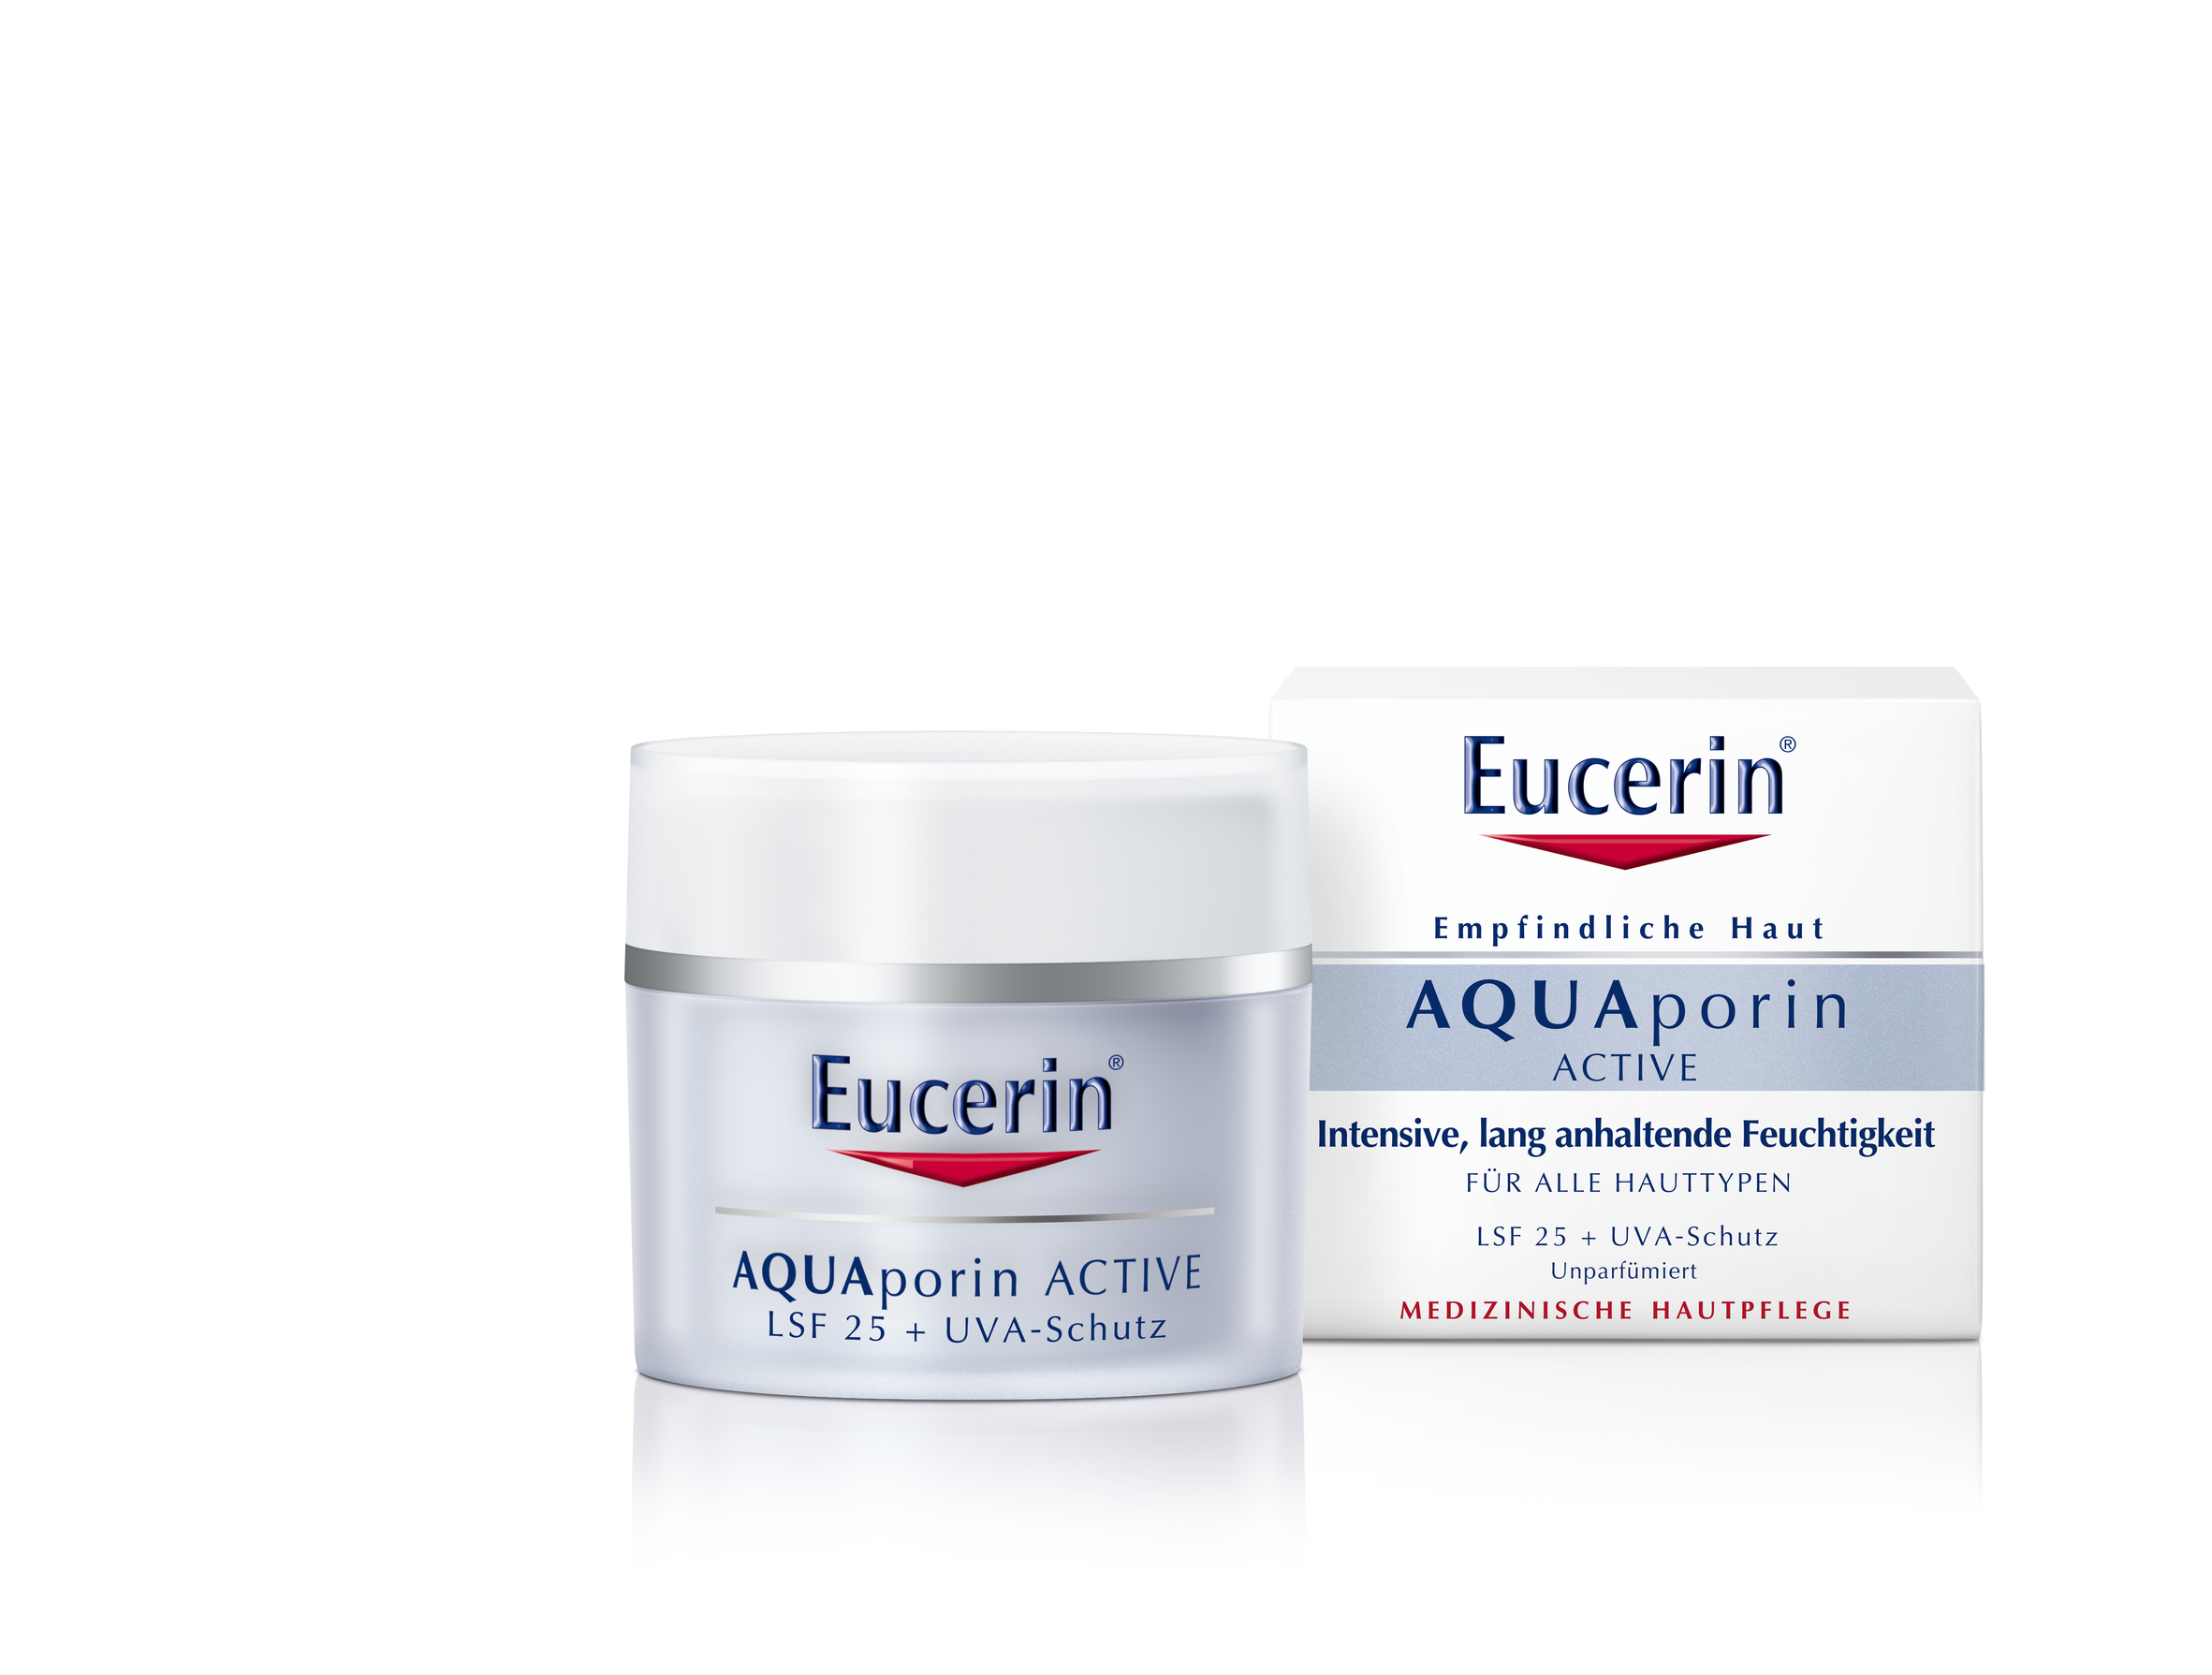 Eucerin Aquaporin Active Creme Lsf 25 (50 ml)